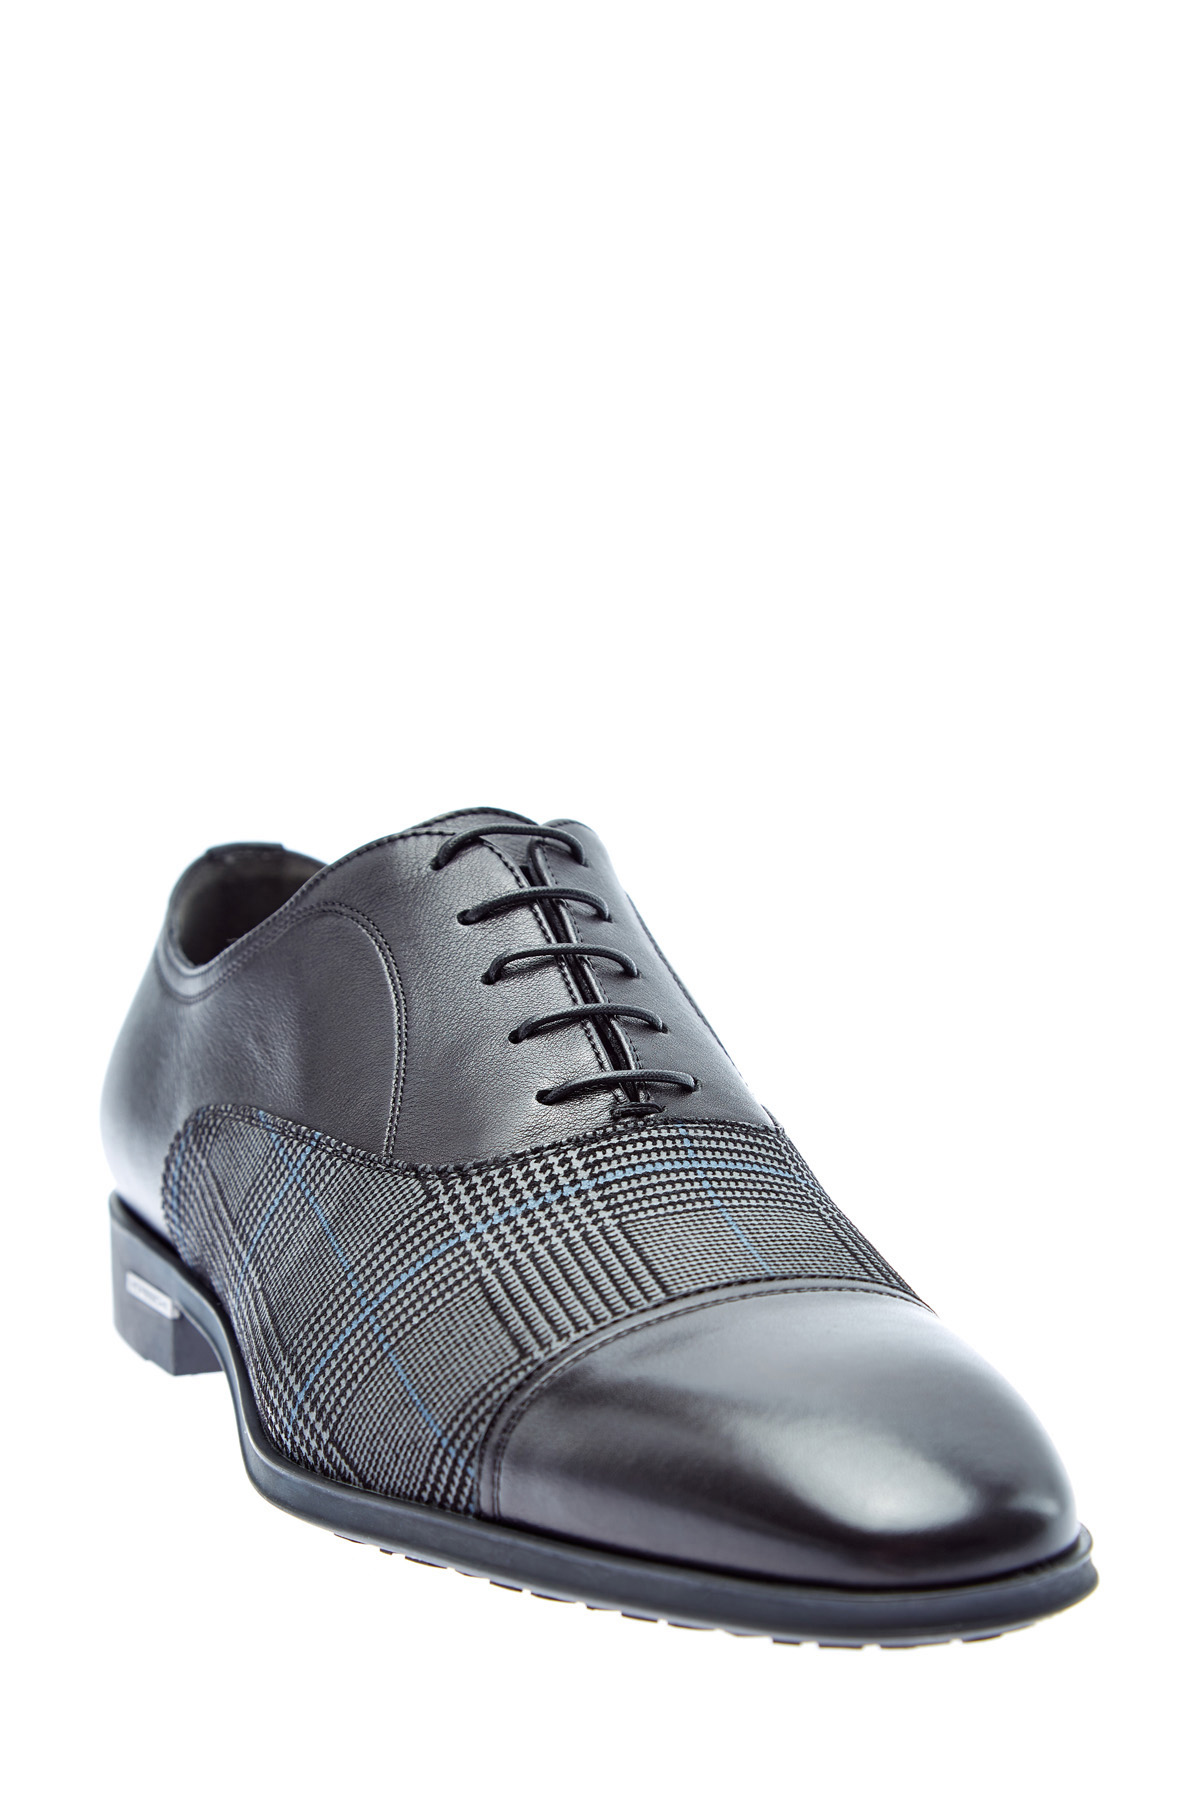 Туфли из кожи и ткани с принтом «Принц Уэльский» MORESCHI, цвет мульти, размер 40.5 - фото 3